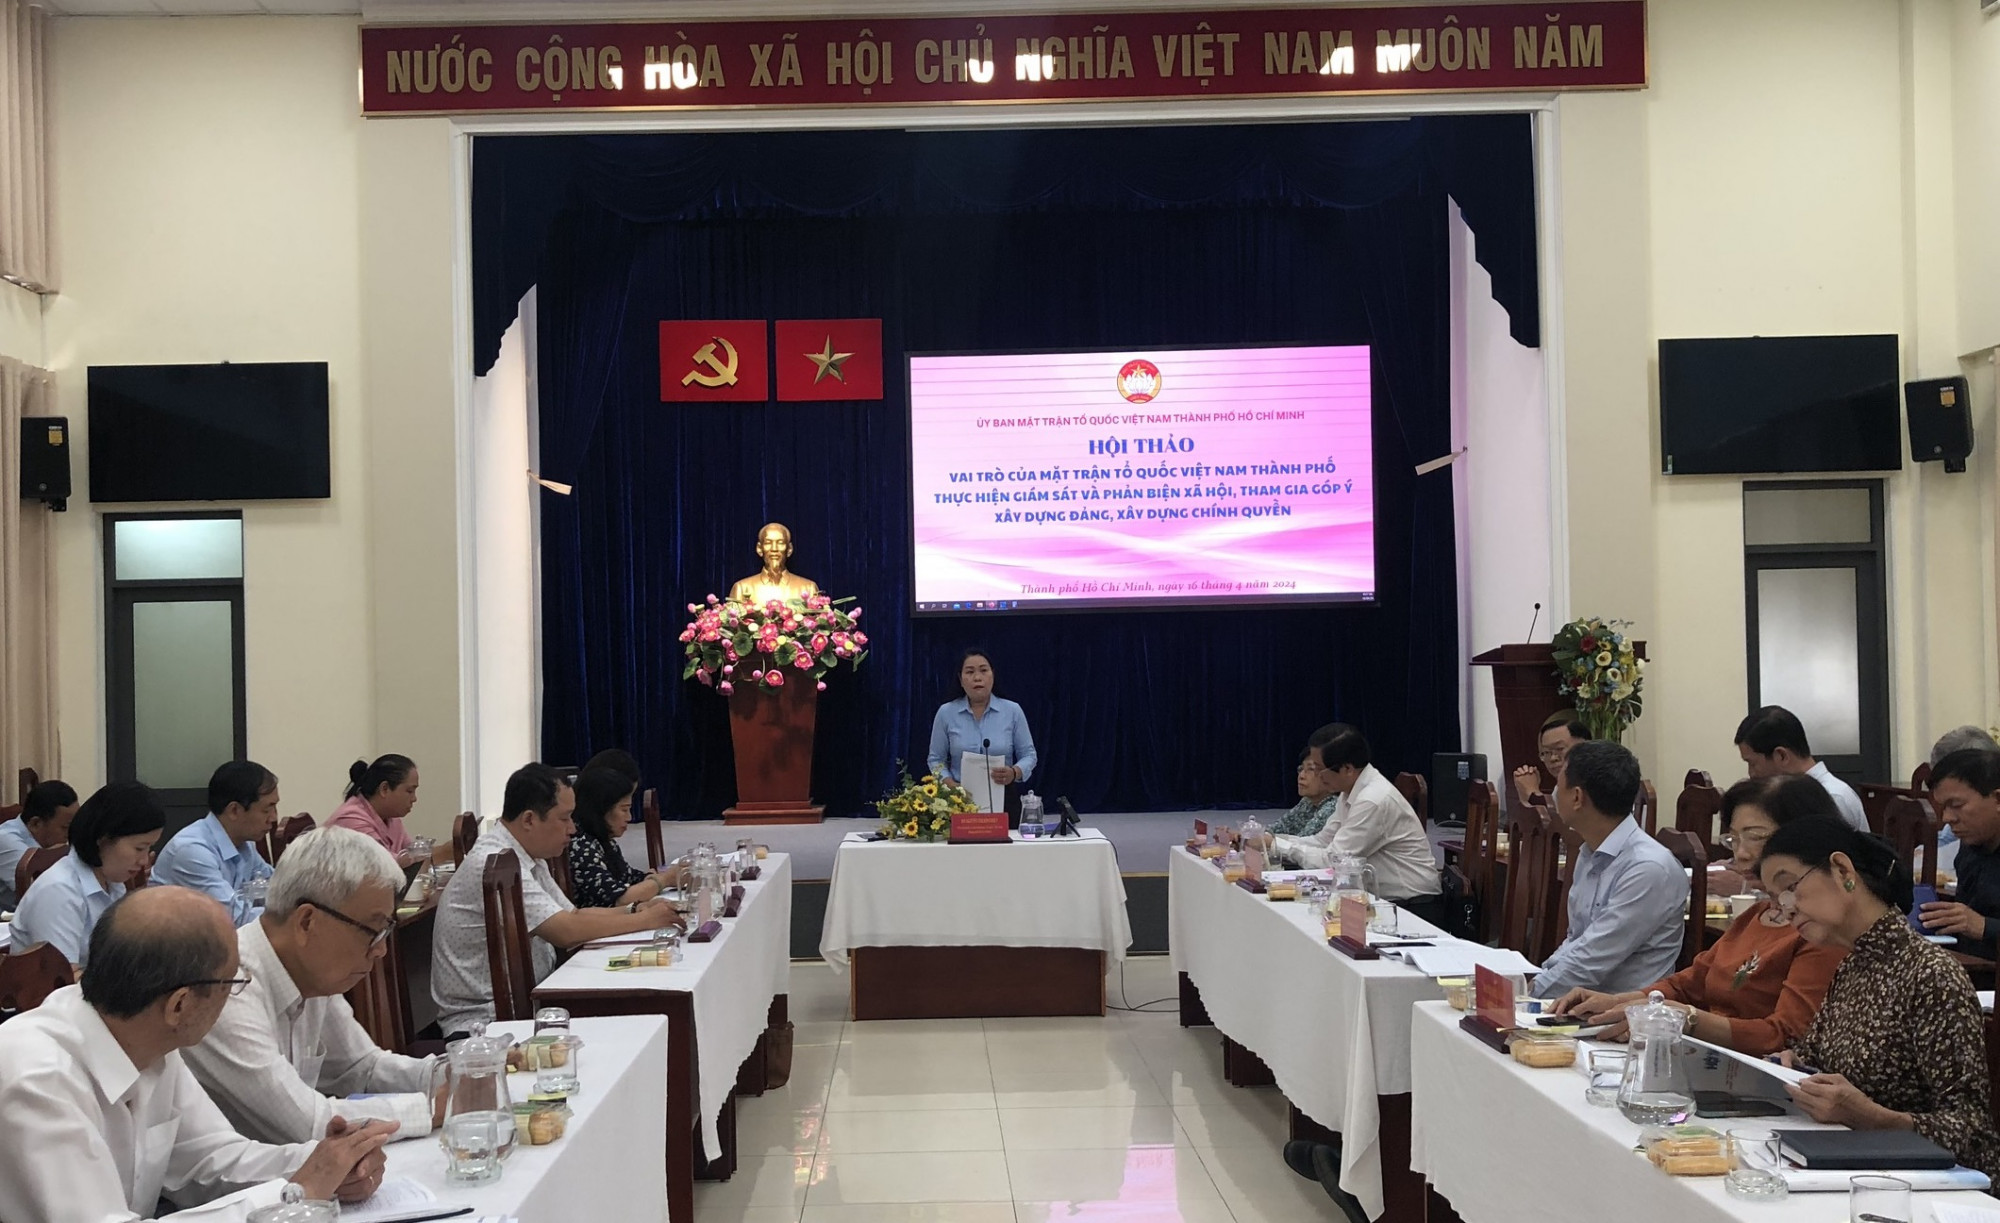 Hội thảo “Vai trò của MTTQ Việt Nam TPHCM thực hiện giám sát và phản biện xã hội, tham gia góp ý xây dựng Đảng, xây dựng chính quyền” sáng 16/4 - Ảnh: Quốc Ngọc